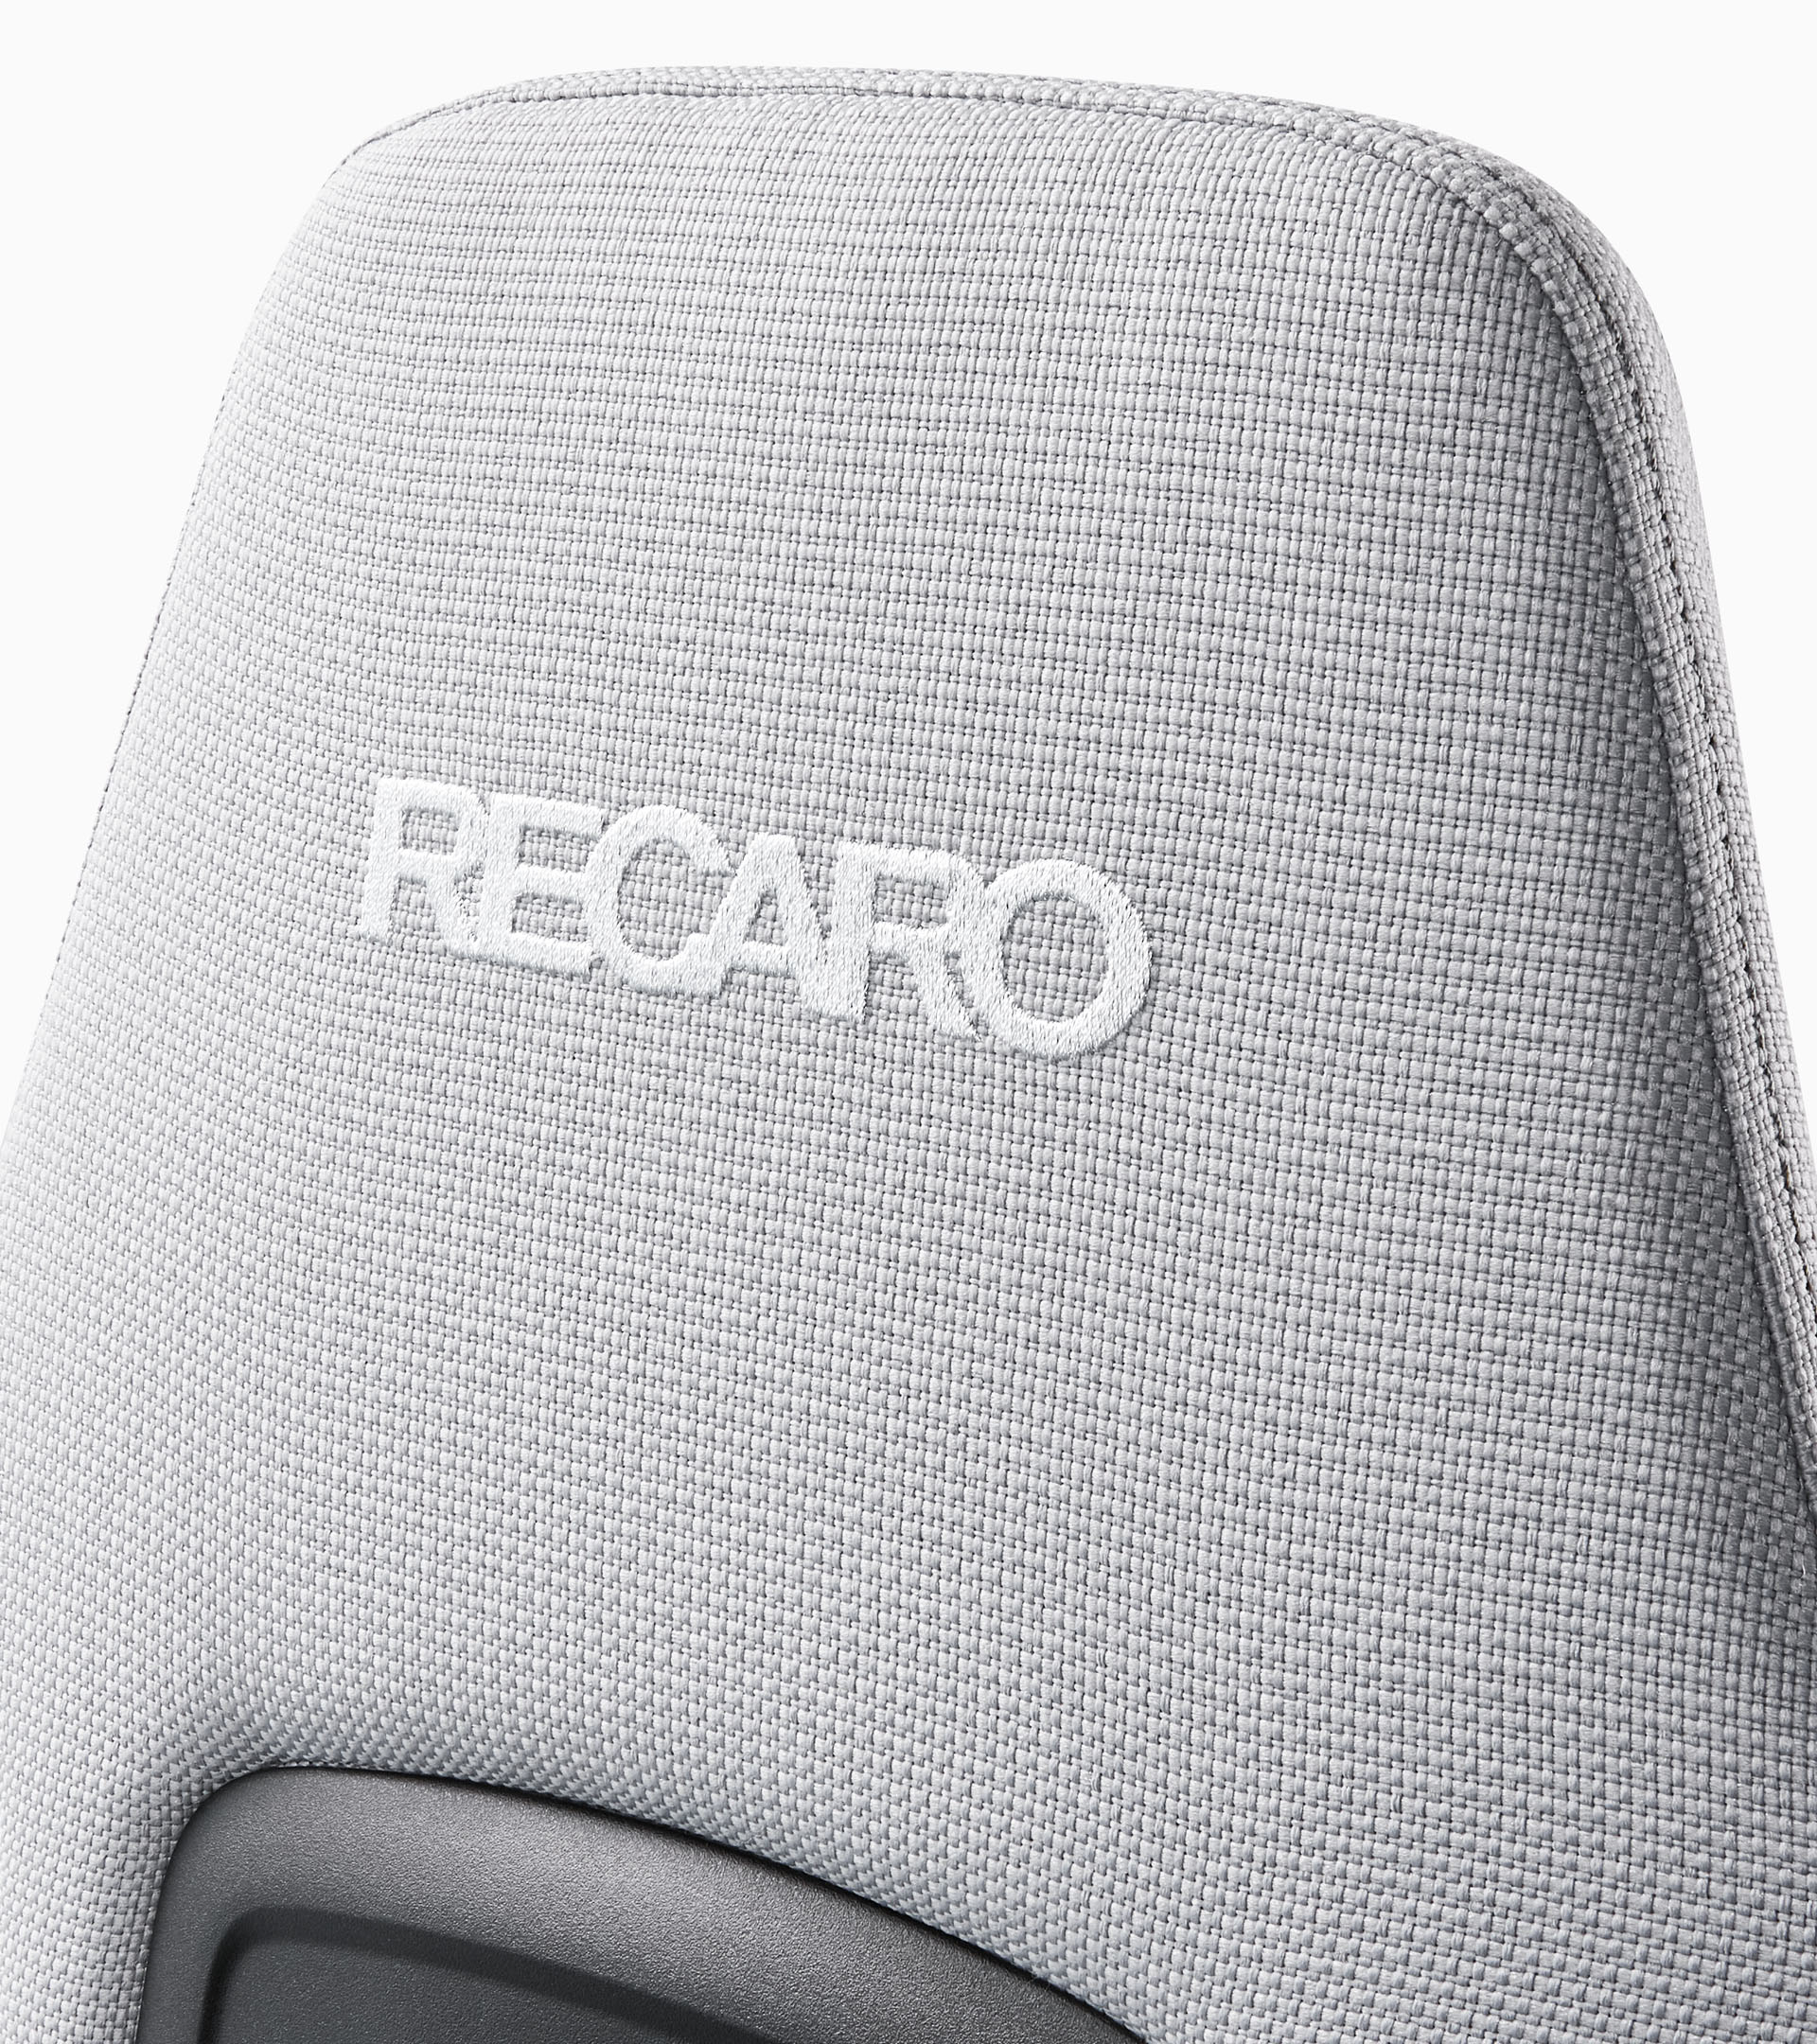 保时捷联合RECARO推出赛车外观电竞椅 售价近1.7万元